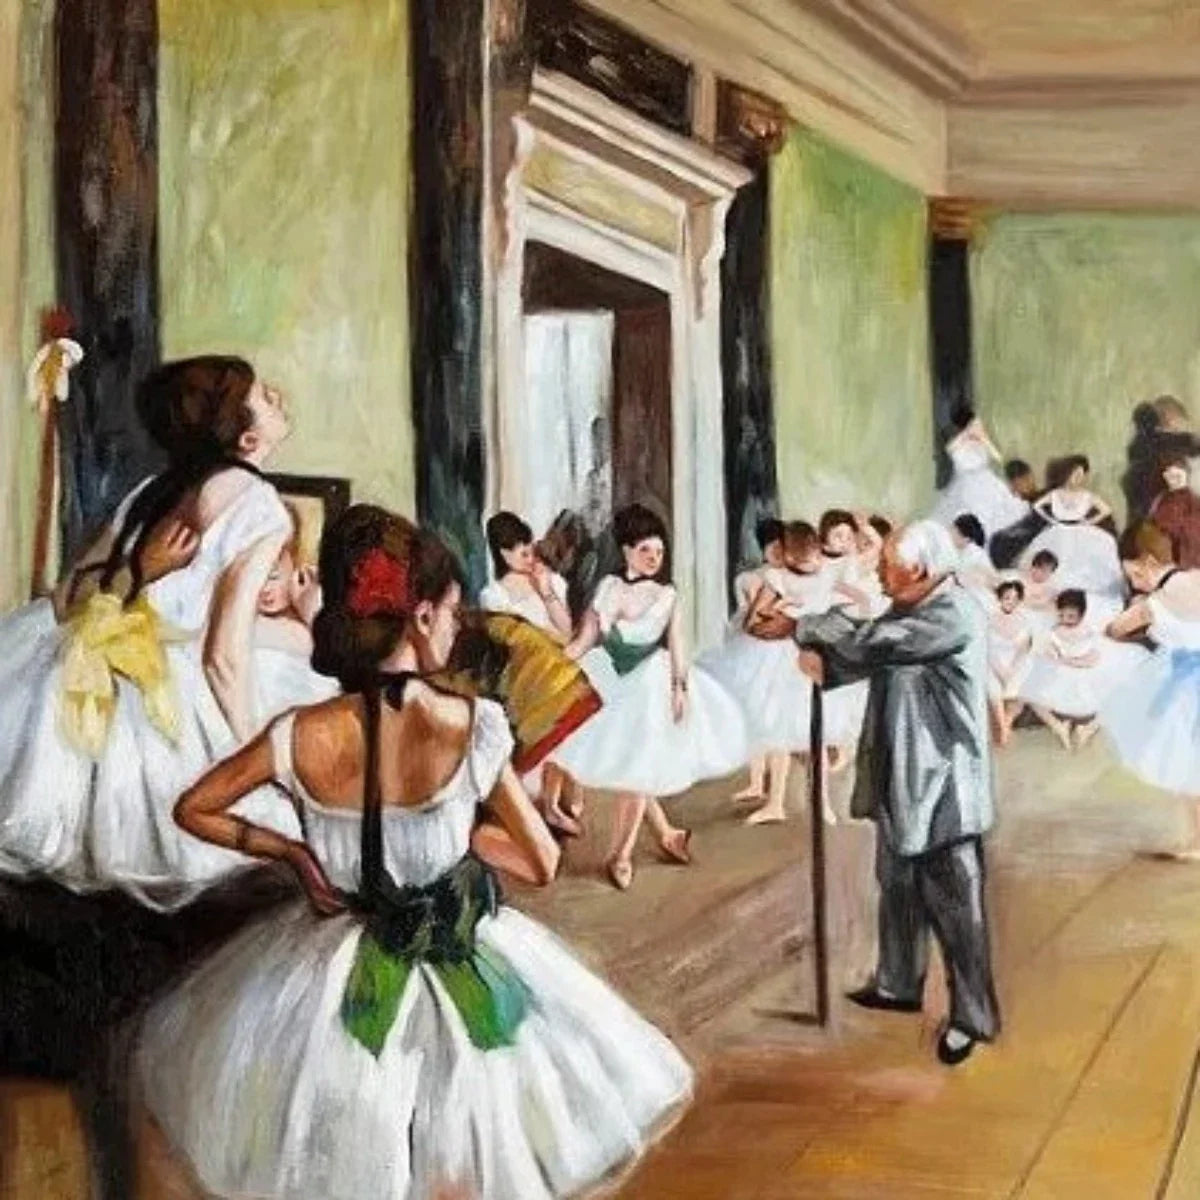 La scuola di danza - Stampe d'Arte Vintage per Decorare il Soggiorno